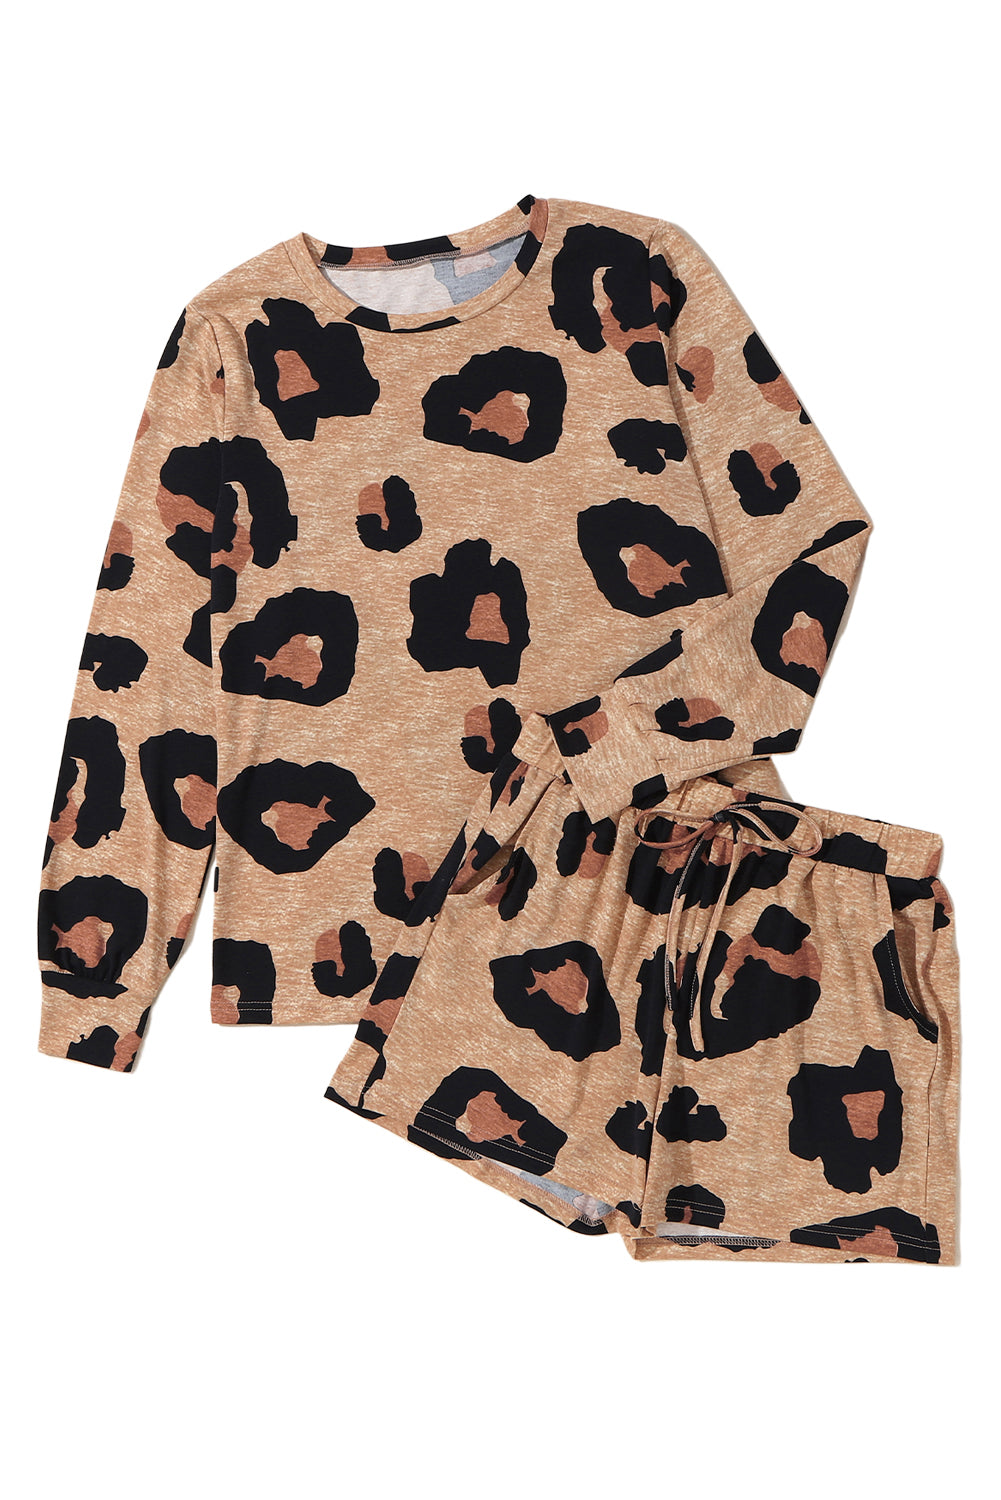 Completo casual con pullover a maniche lunghe e pantaloncini con stampa animalier leopardata